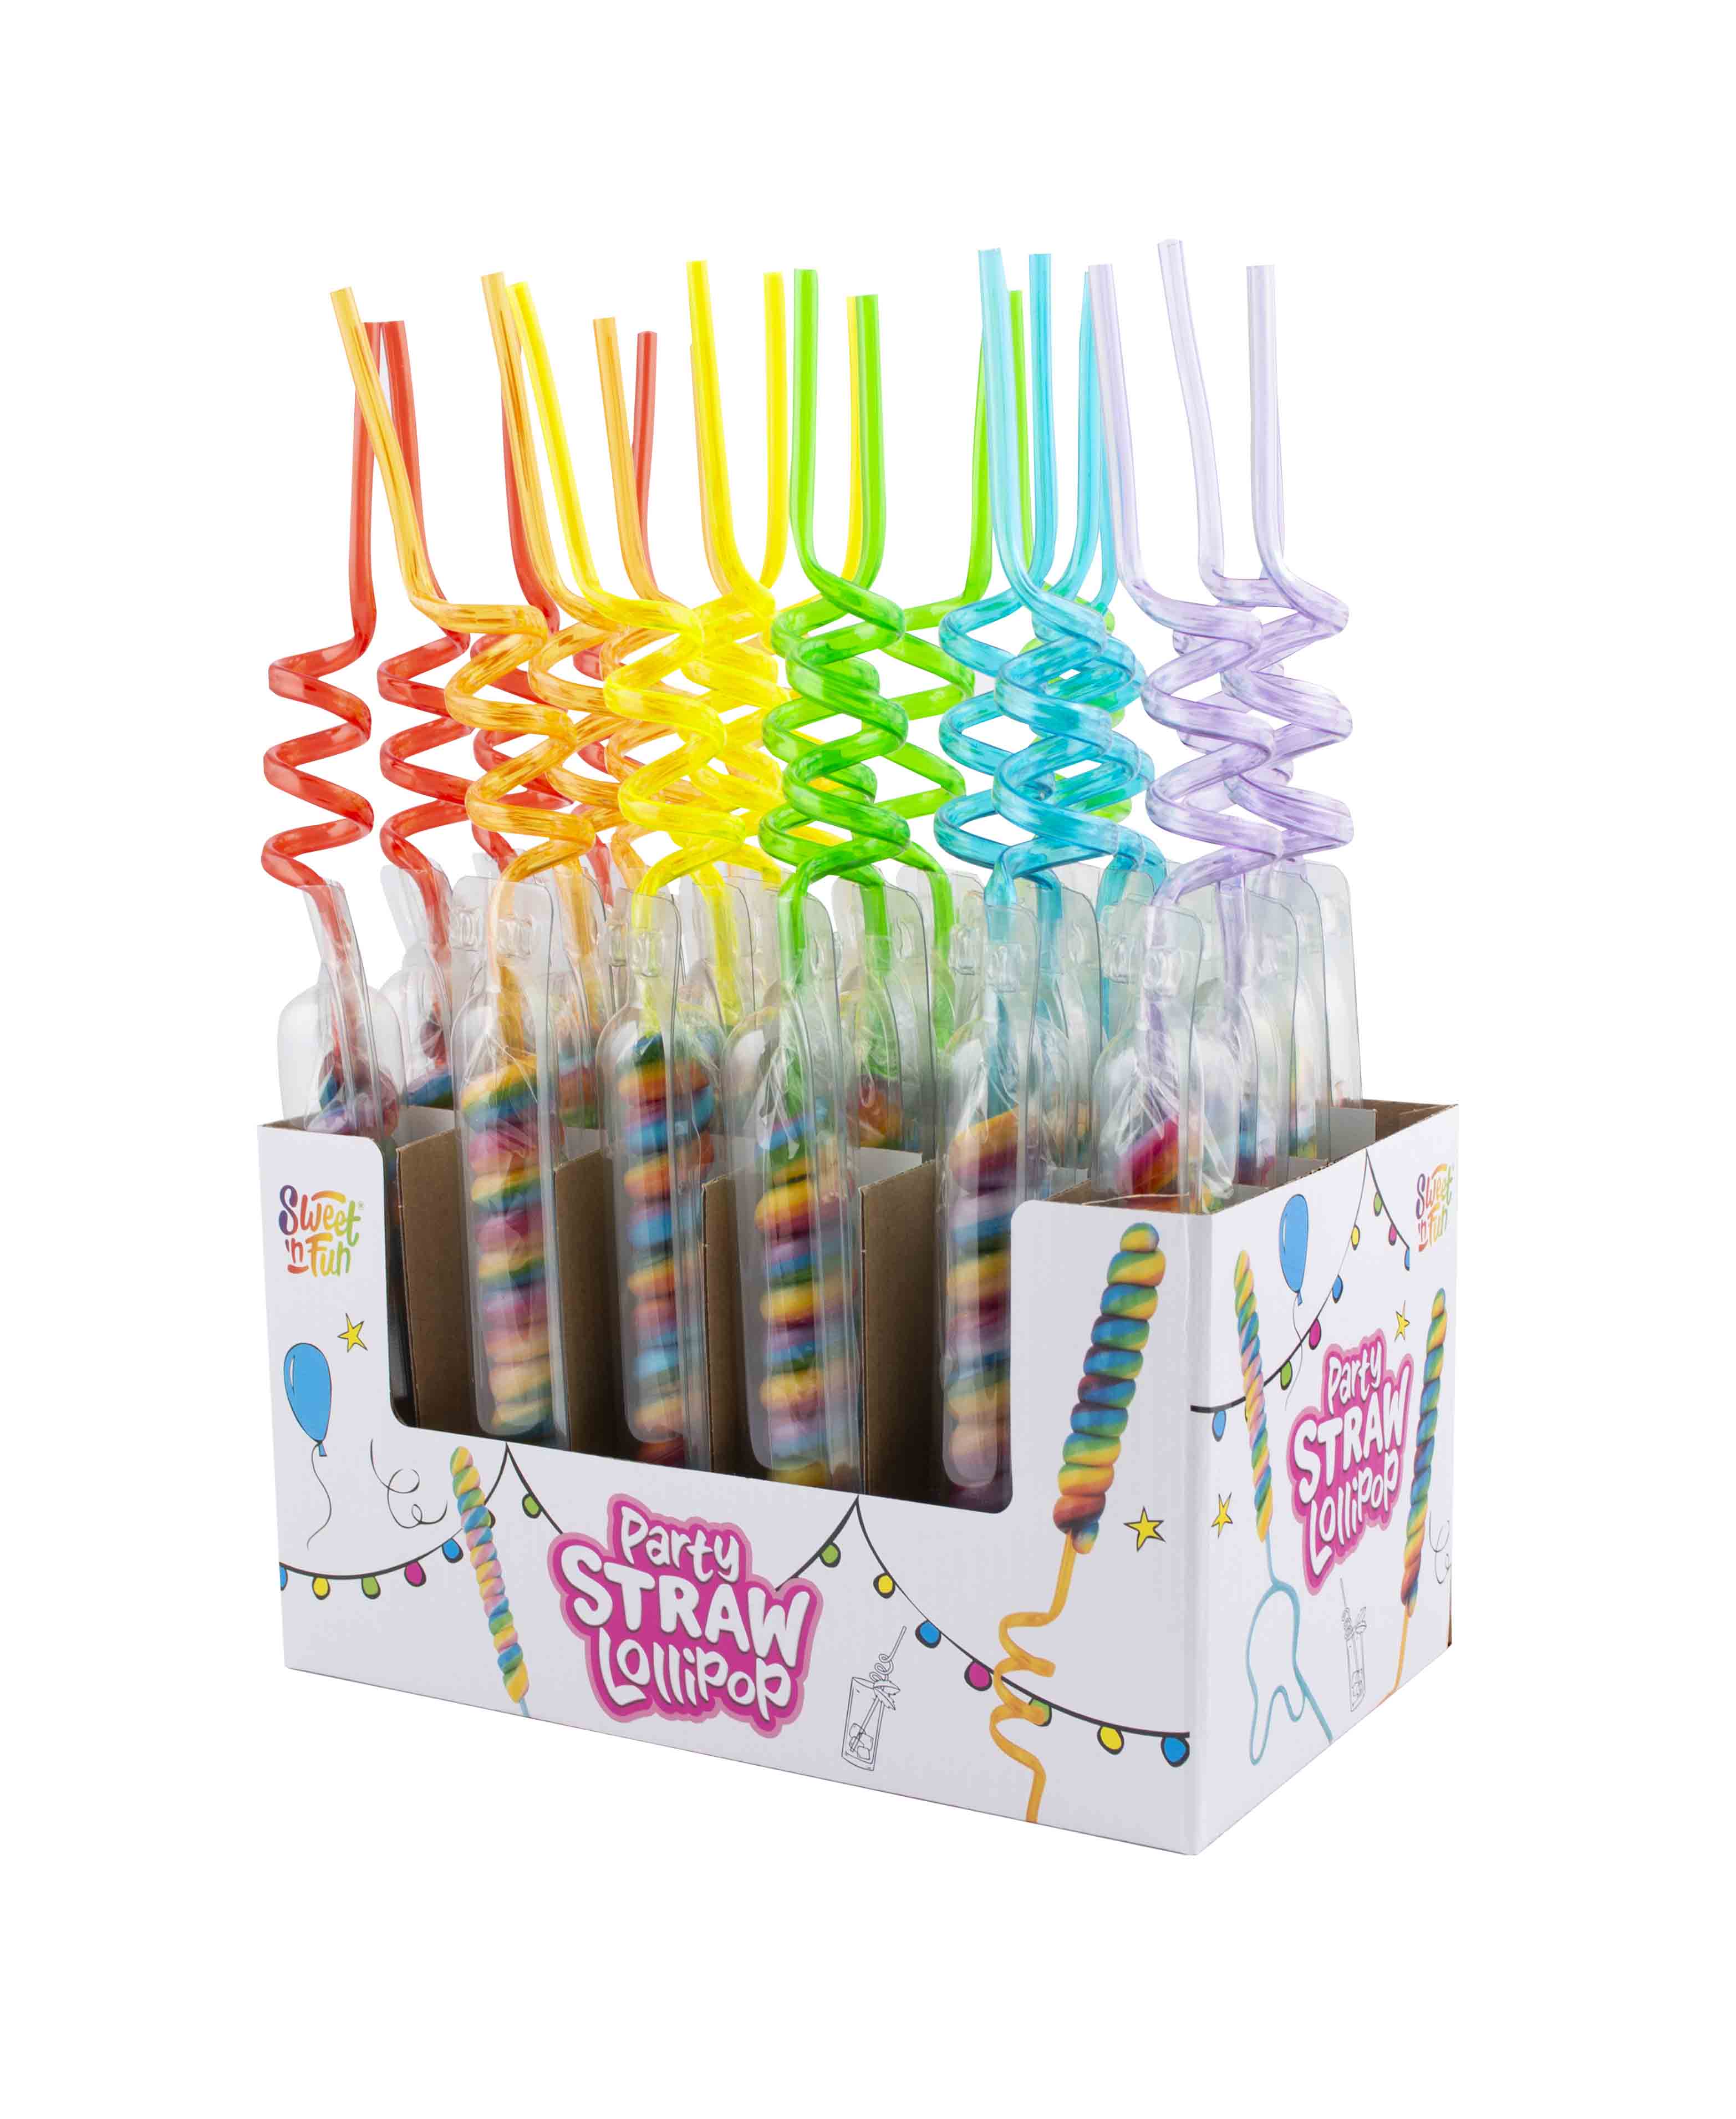 Party straw lollipop – lízátko s party brčkem 42g